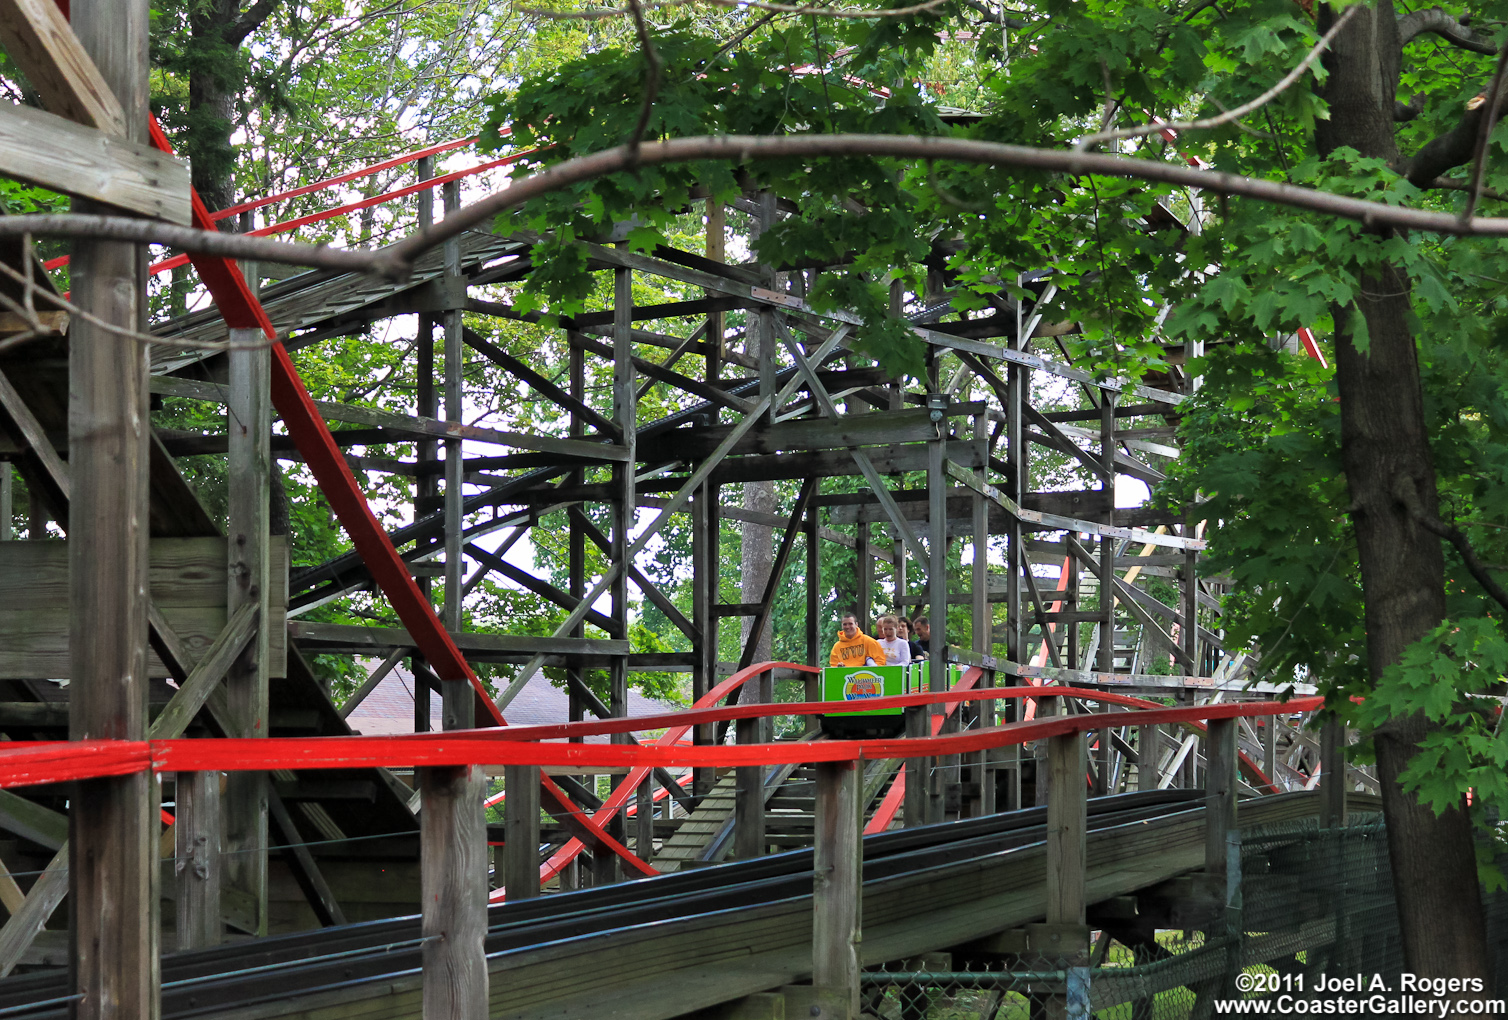 Comet roller coaster built by PTC